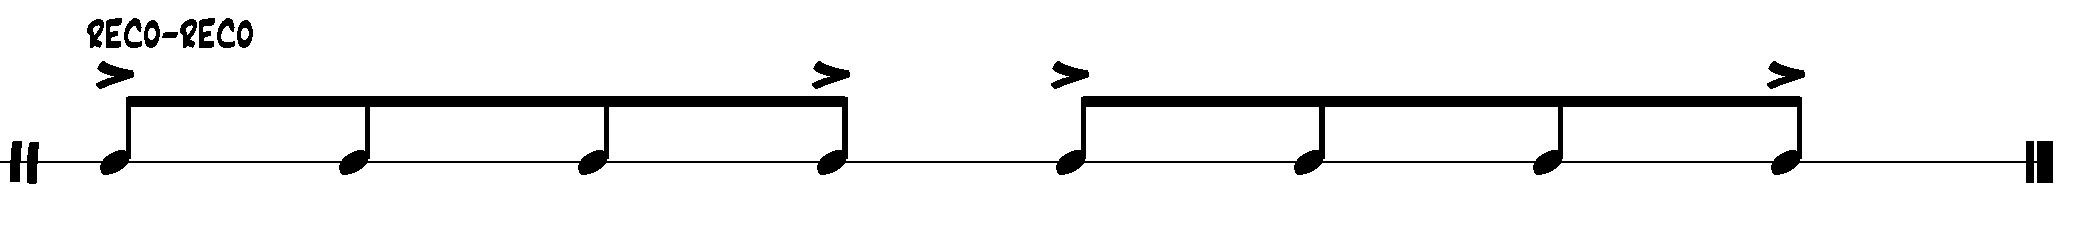 samba notation - reco-reco